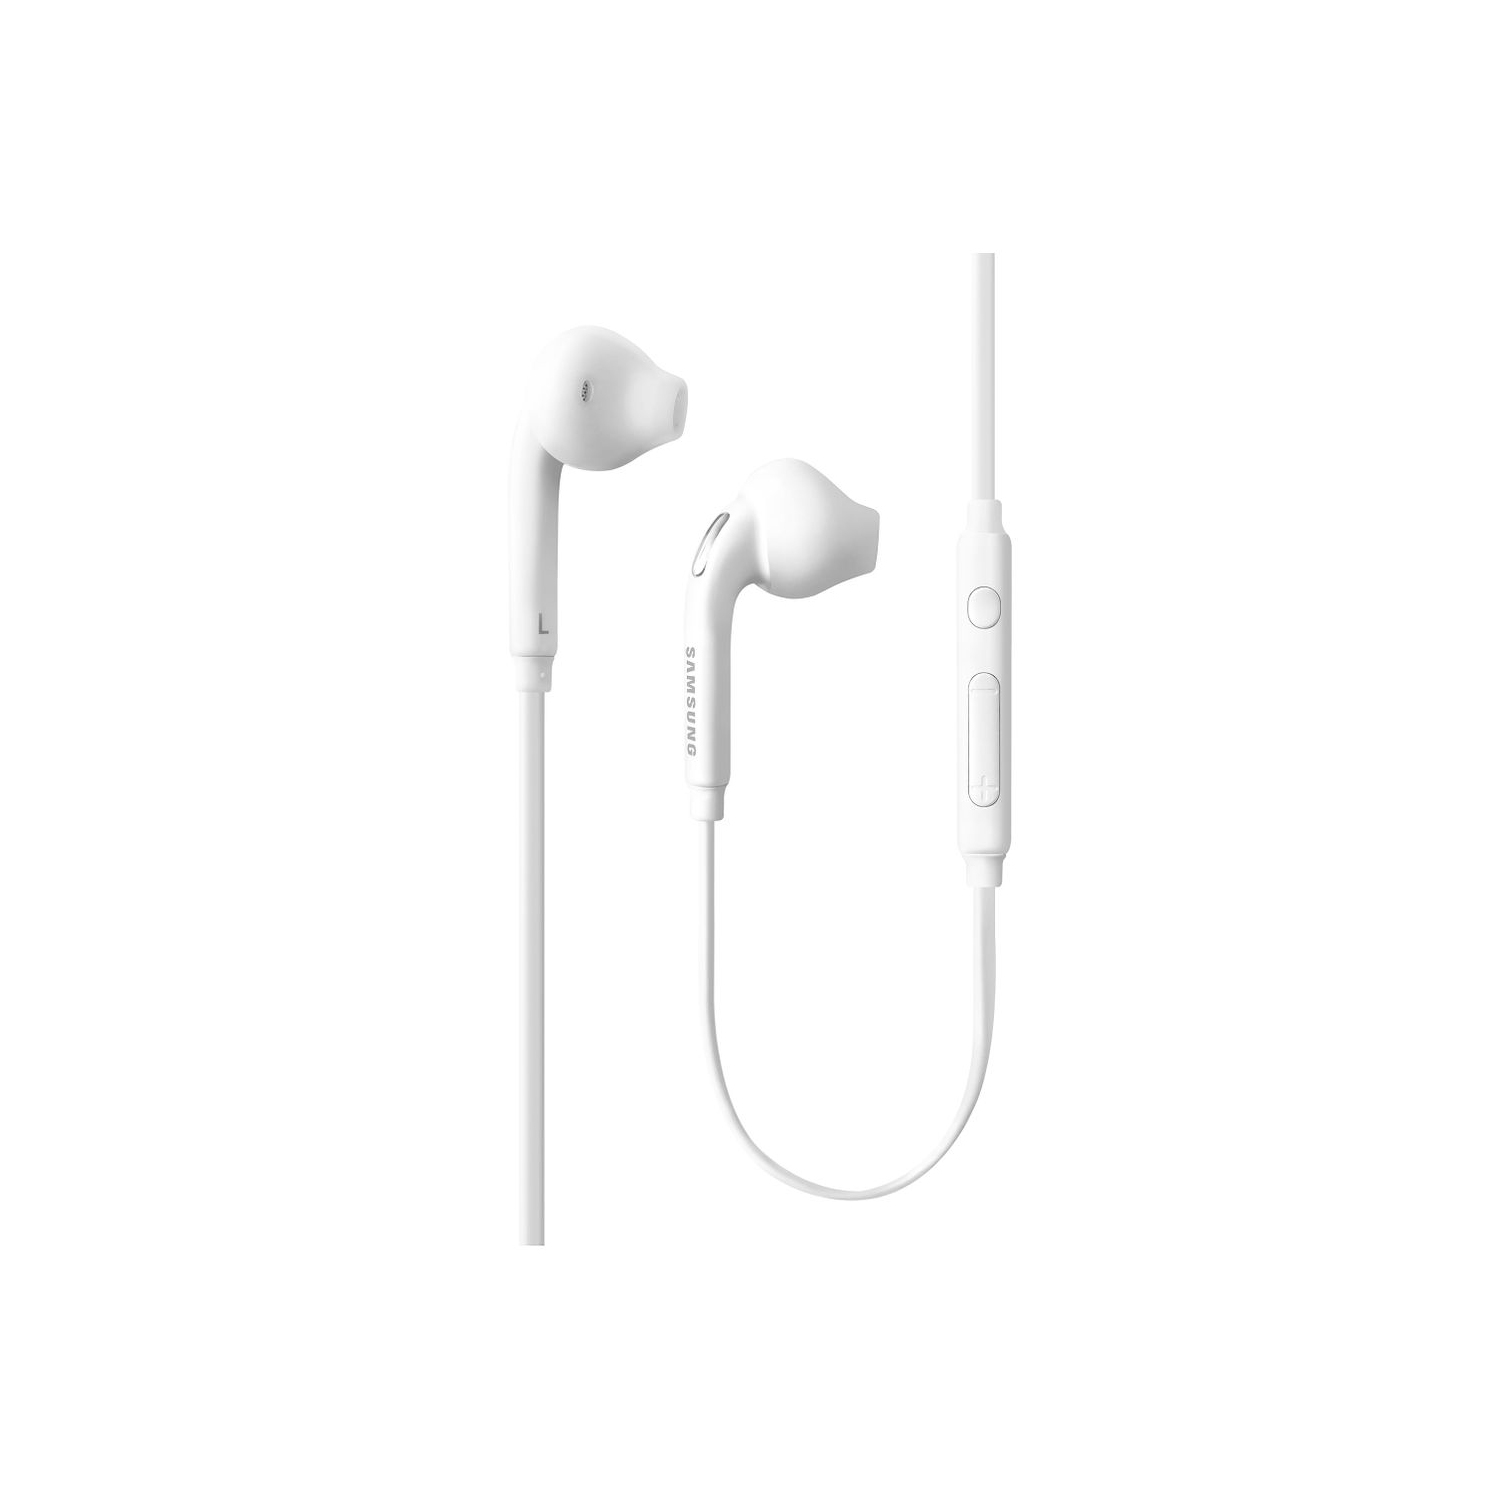 Samsung 3.5mm In-Ear Stereo Headset Earbud Headphones OEM EO-EG920BW,Open Box, White